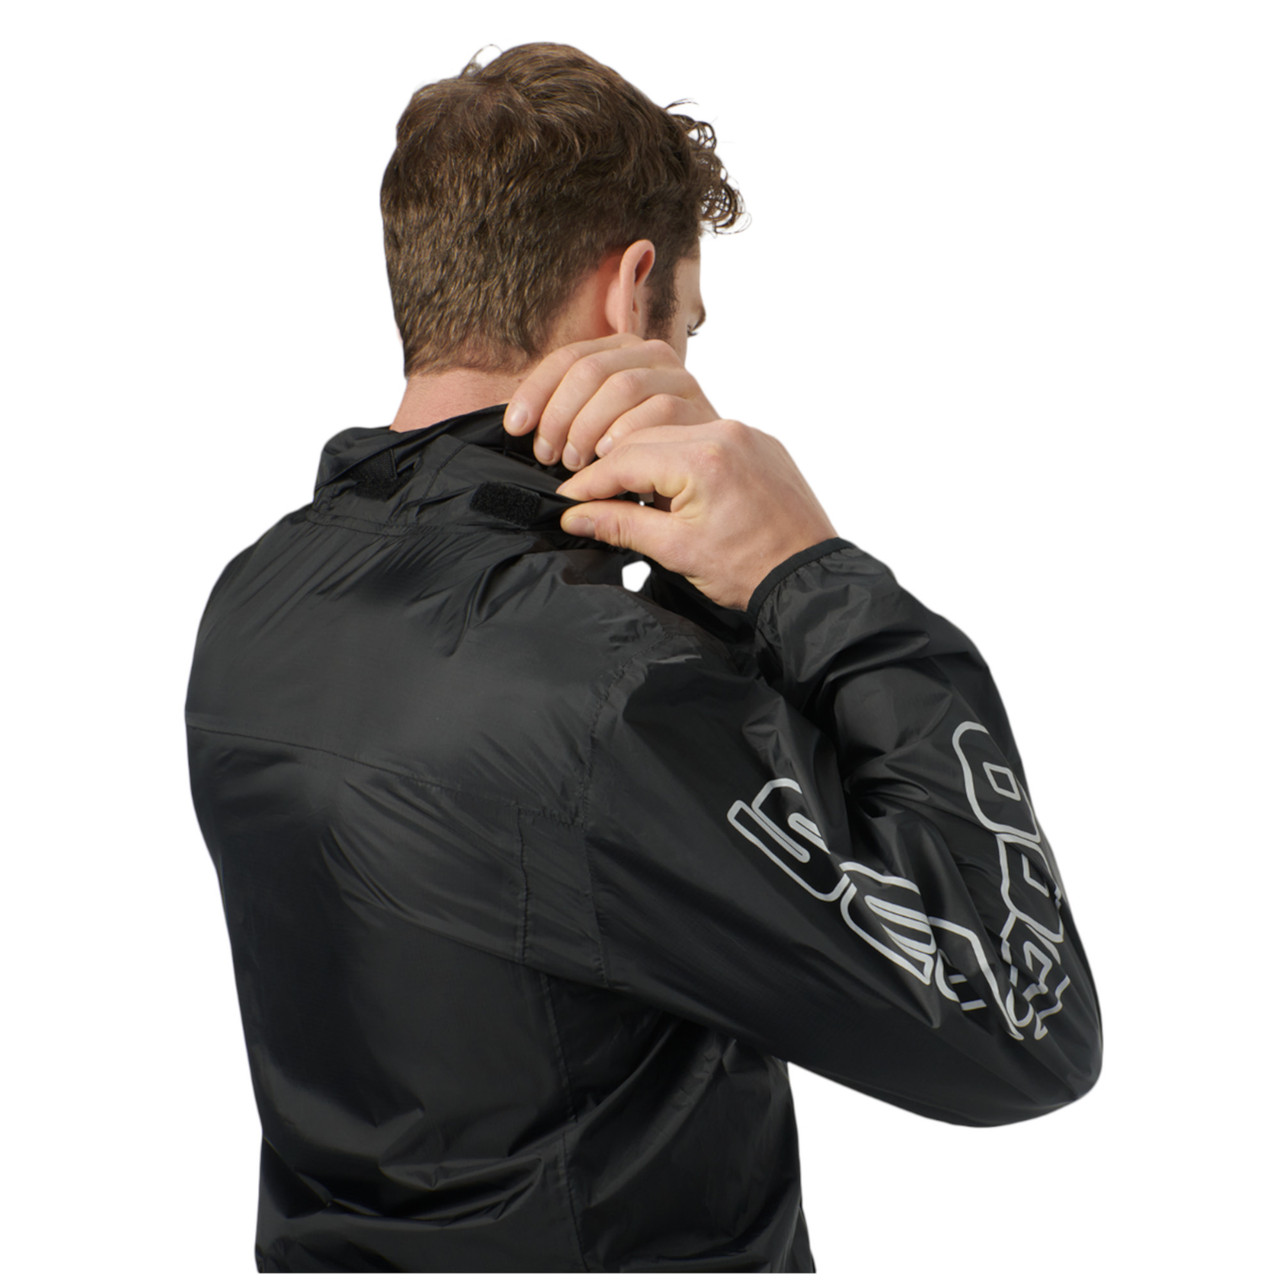 Sea-Doo New OEM, Men's Medium Water-Resistant Windproof Jacket, 4547000690